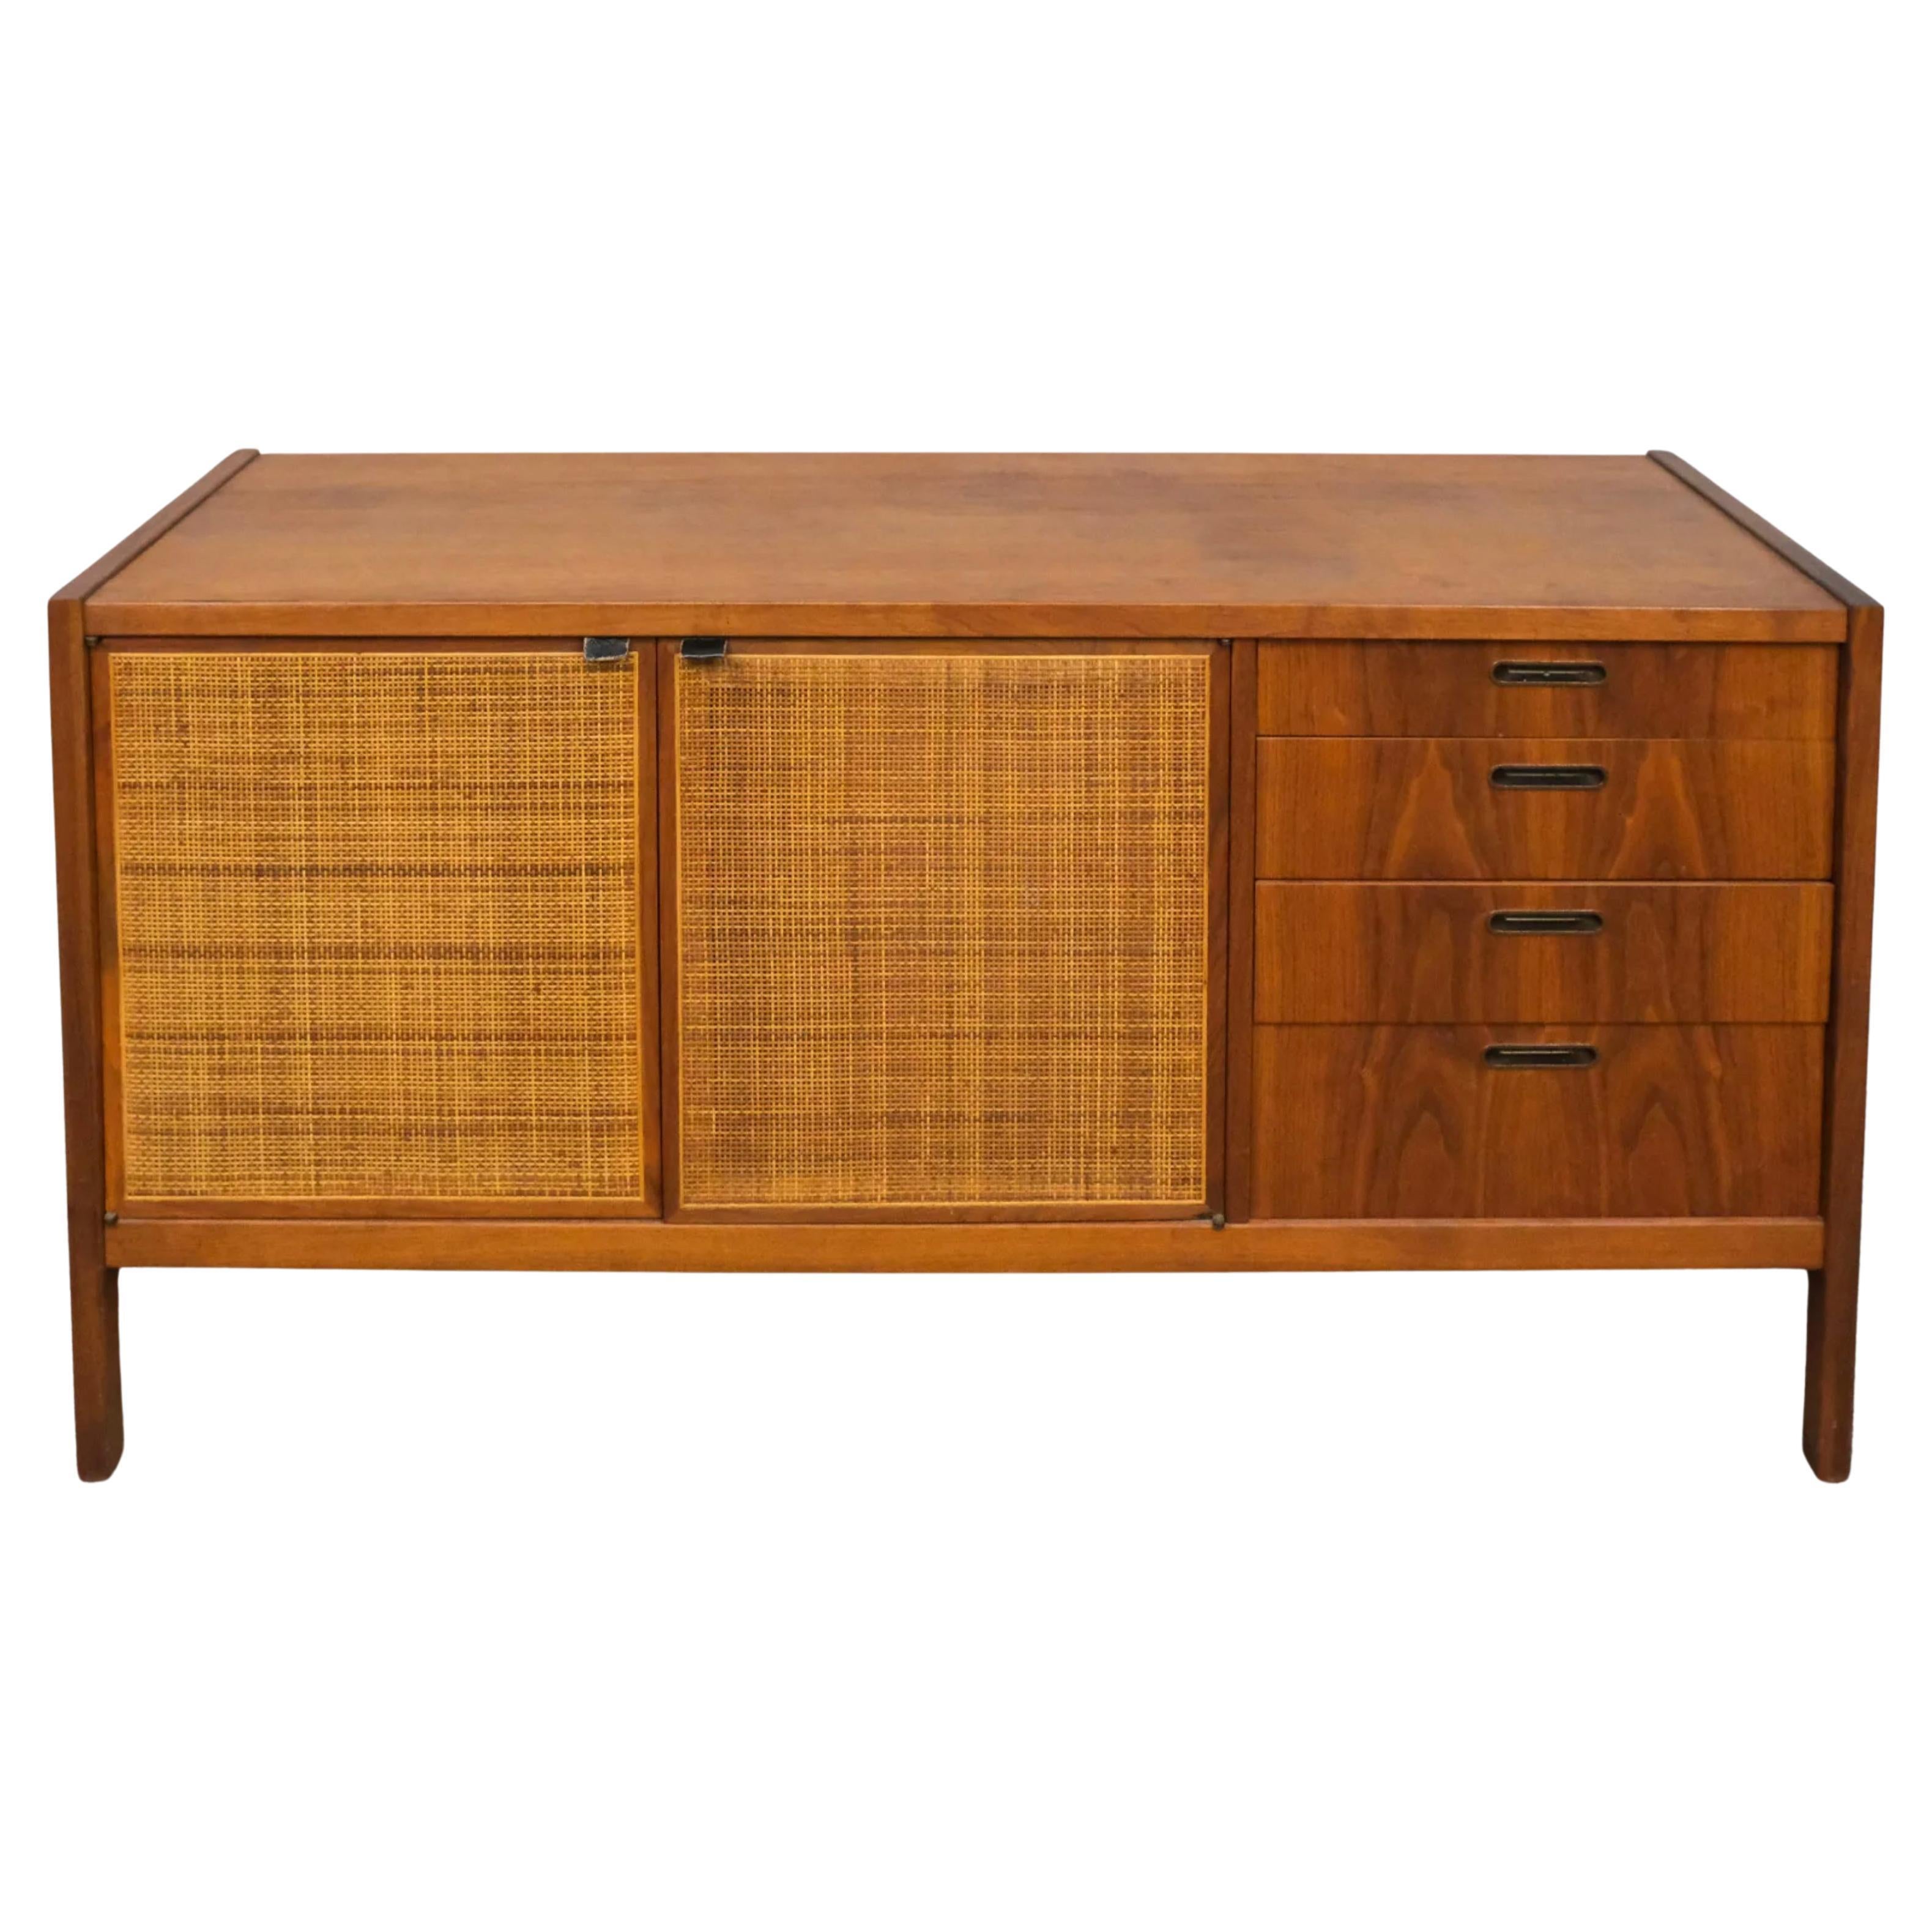 Mid century modern cane walnut credenza sideboard 4 drawer 2 door